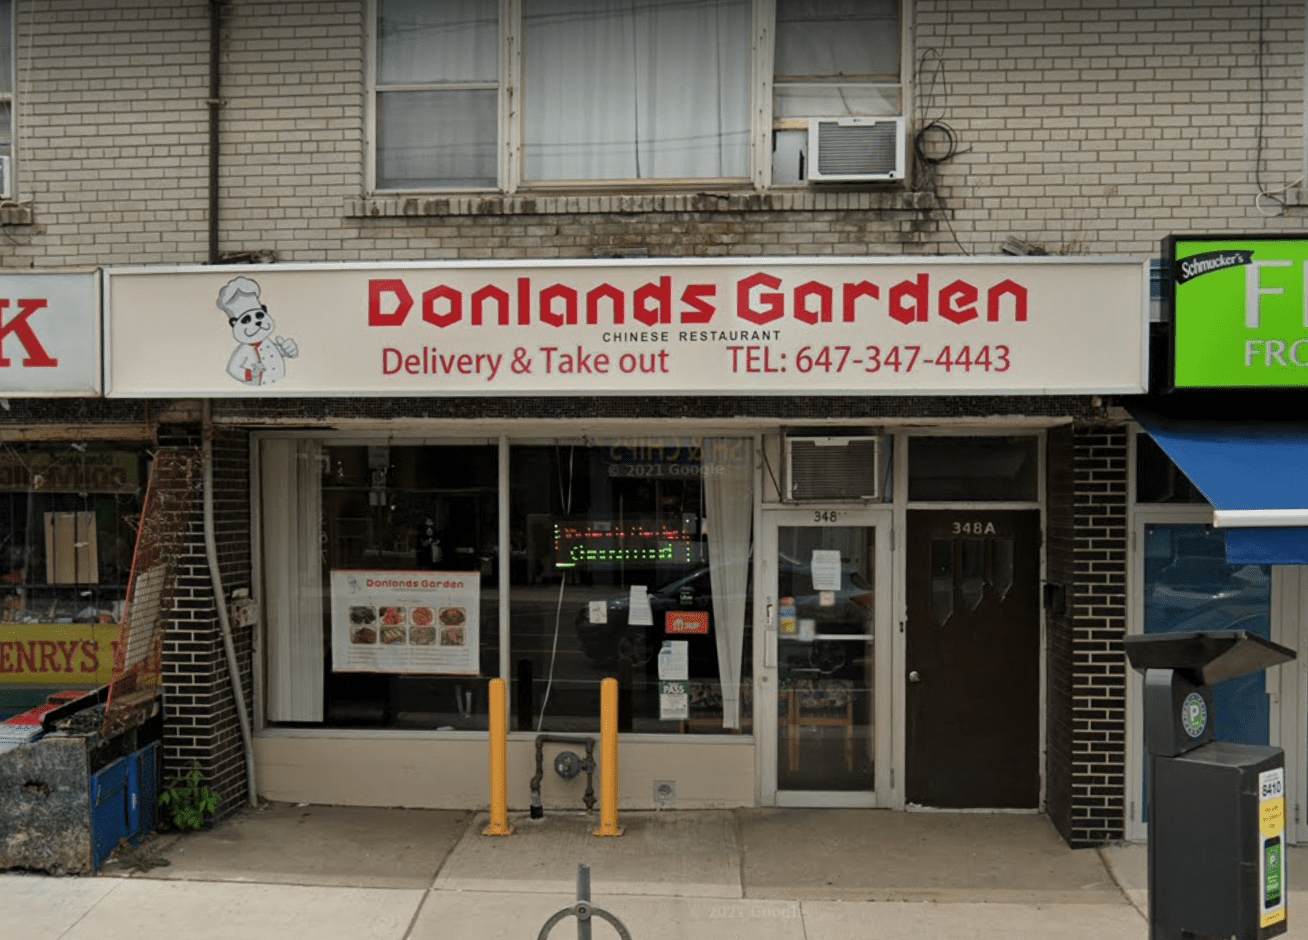 Donlands Garden Chinese Restaurant